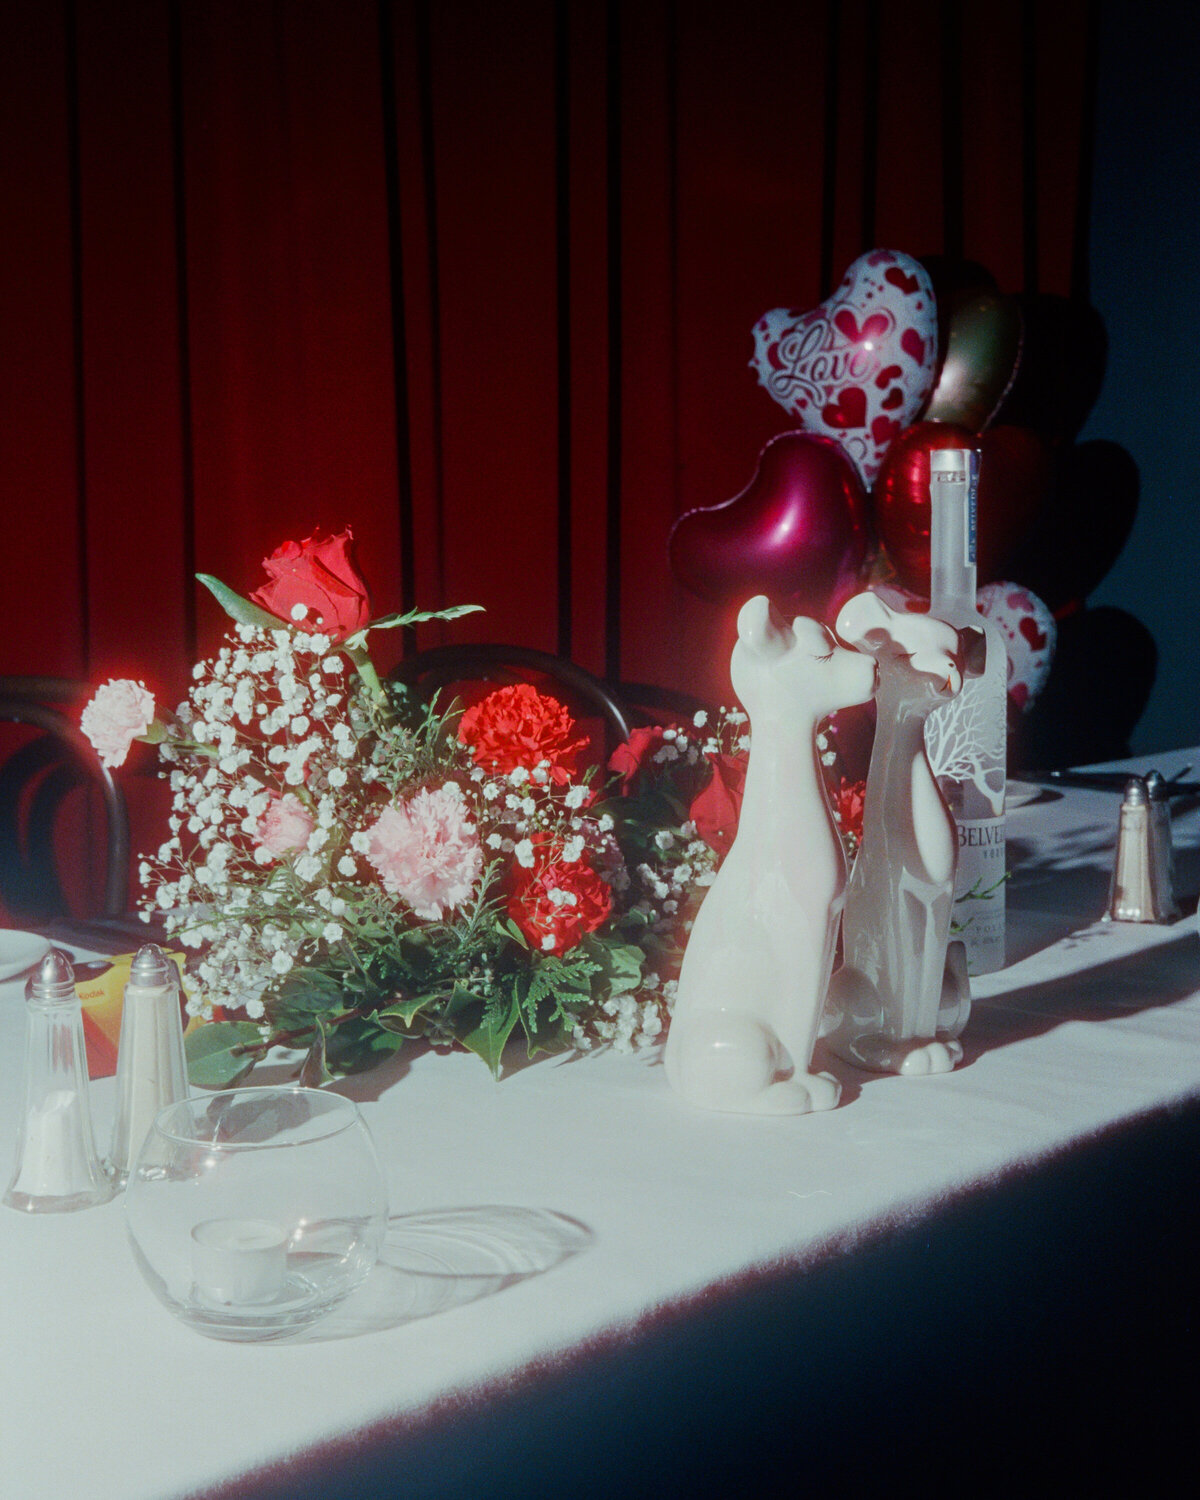 35mm-Analog-Kodak-Film-Wedding-Photos-Briars-Atlas-3083